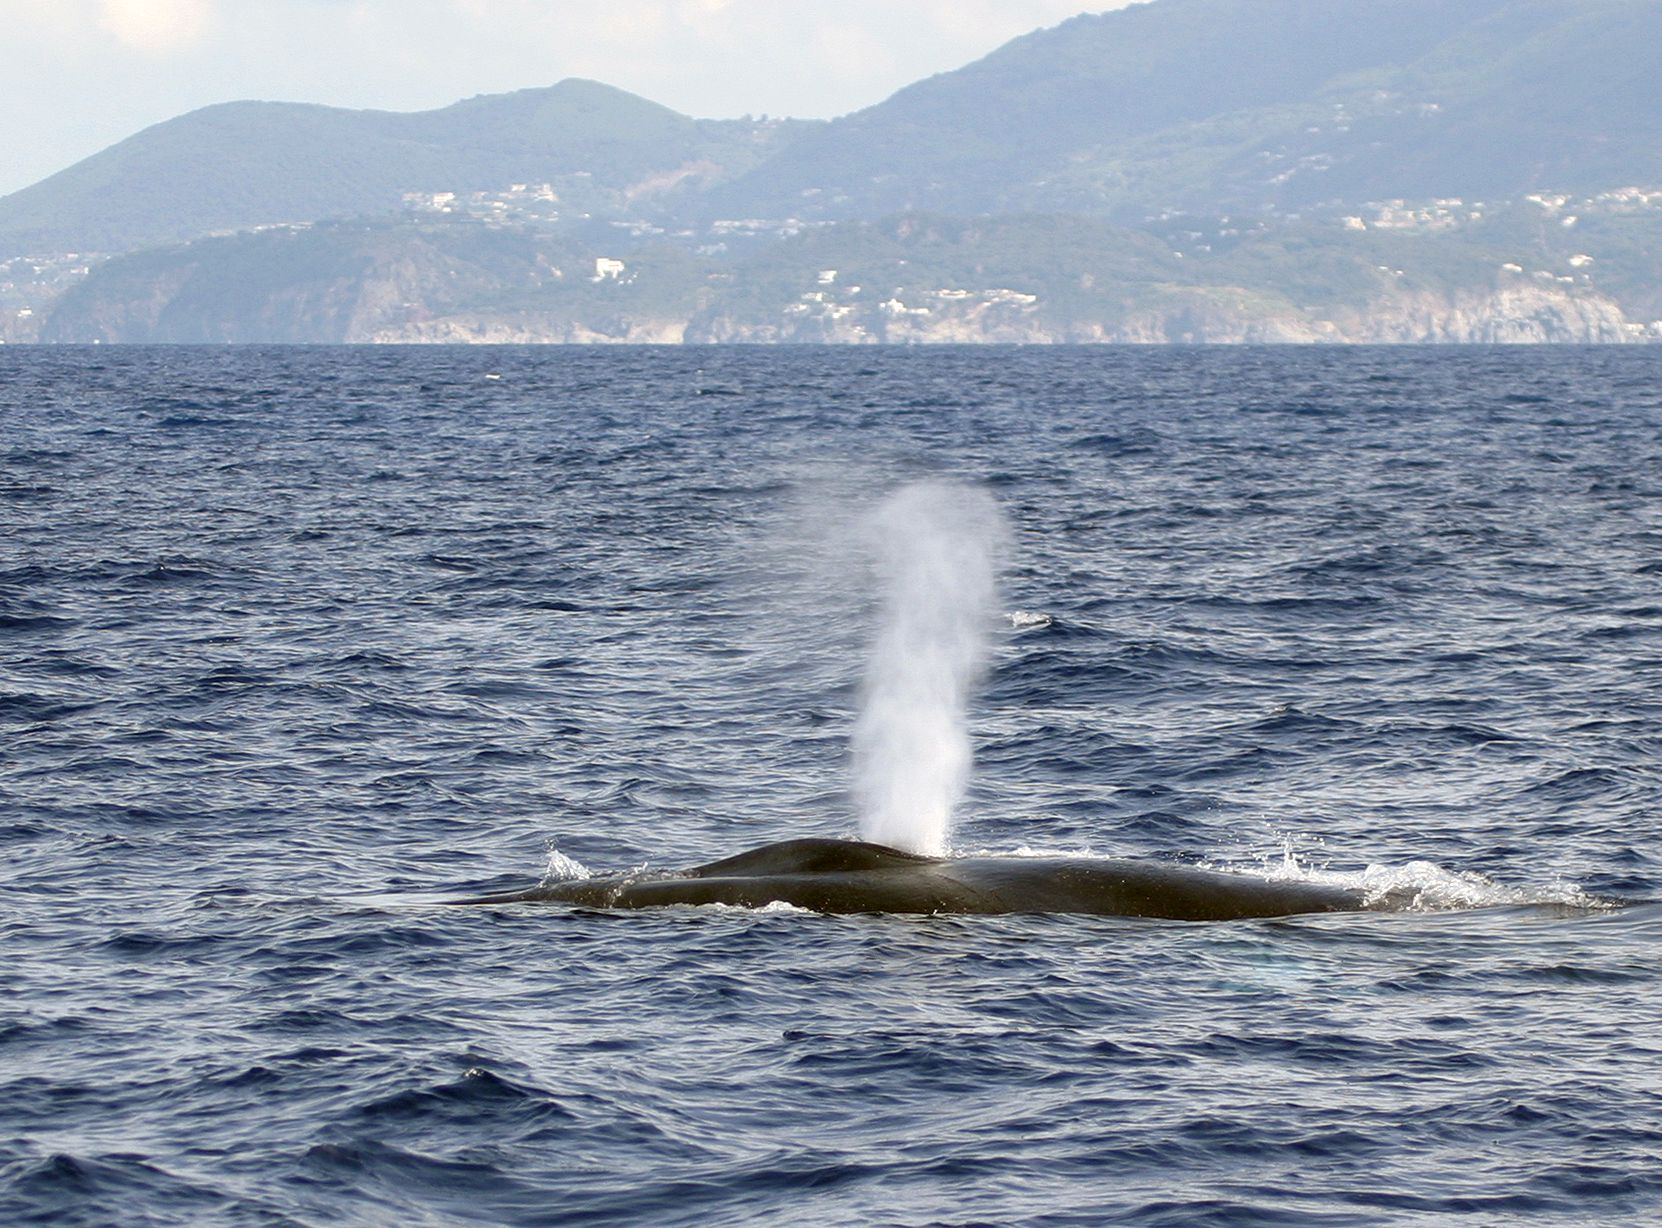 Den Walen zuliebe: Tempolimit auf dem Meer